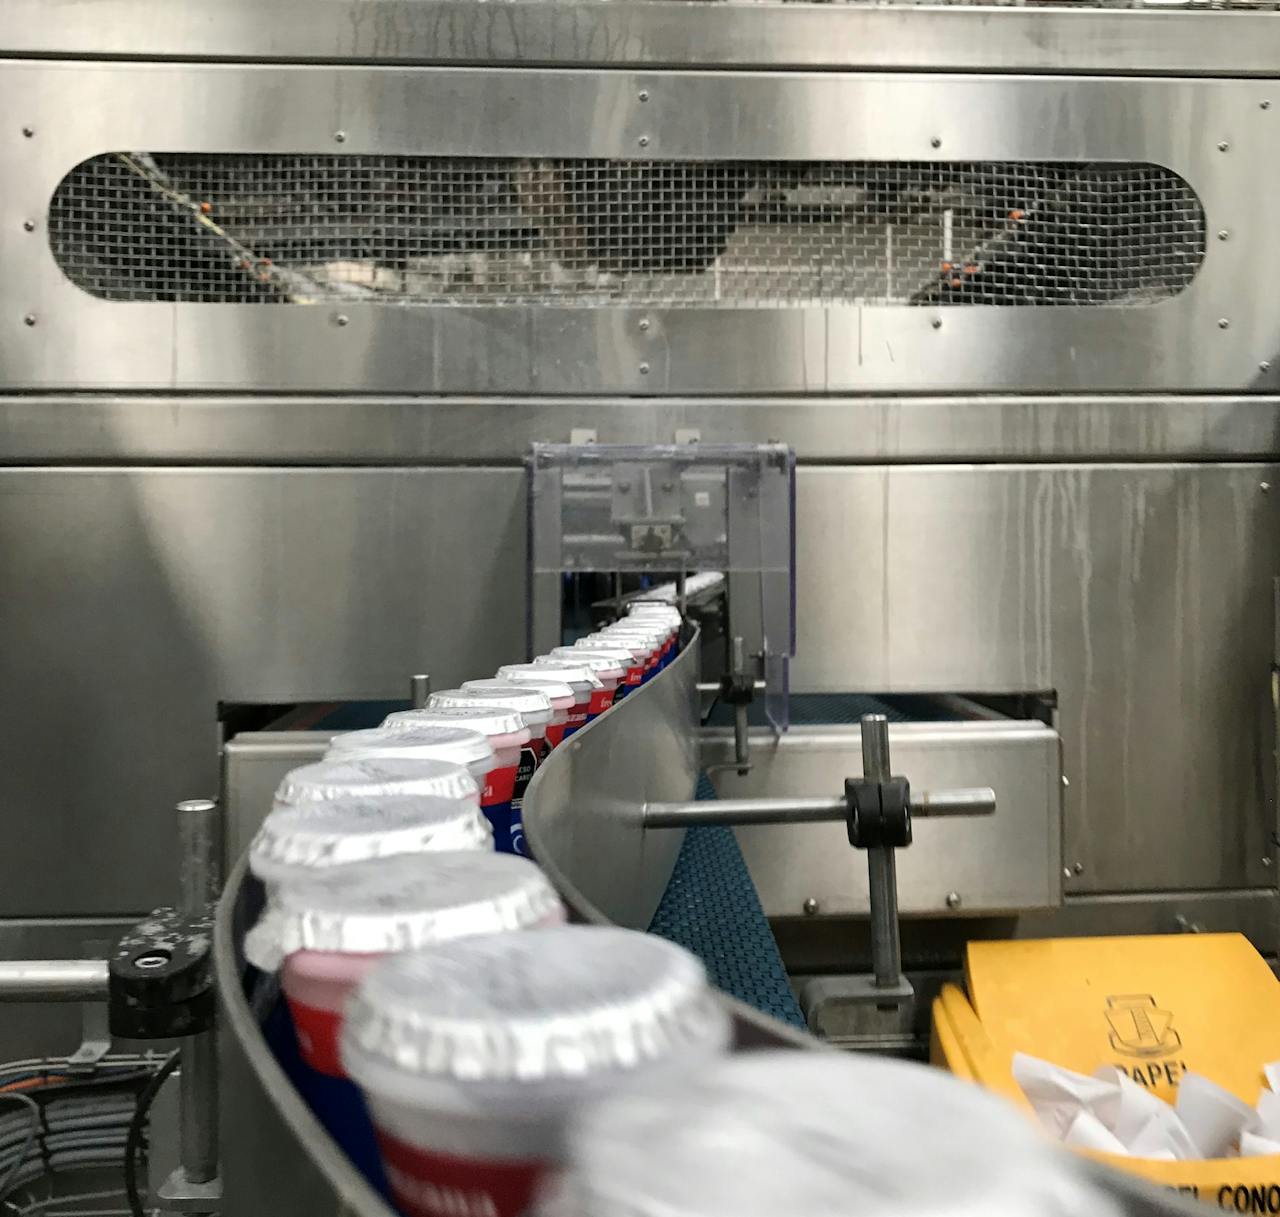 Este proceso automatizado con Danup / Danone ha marcado un hito en el envasado de yogurt en México.